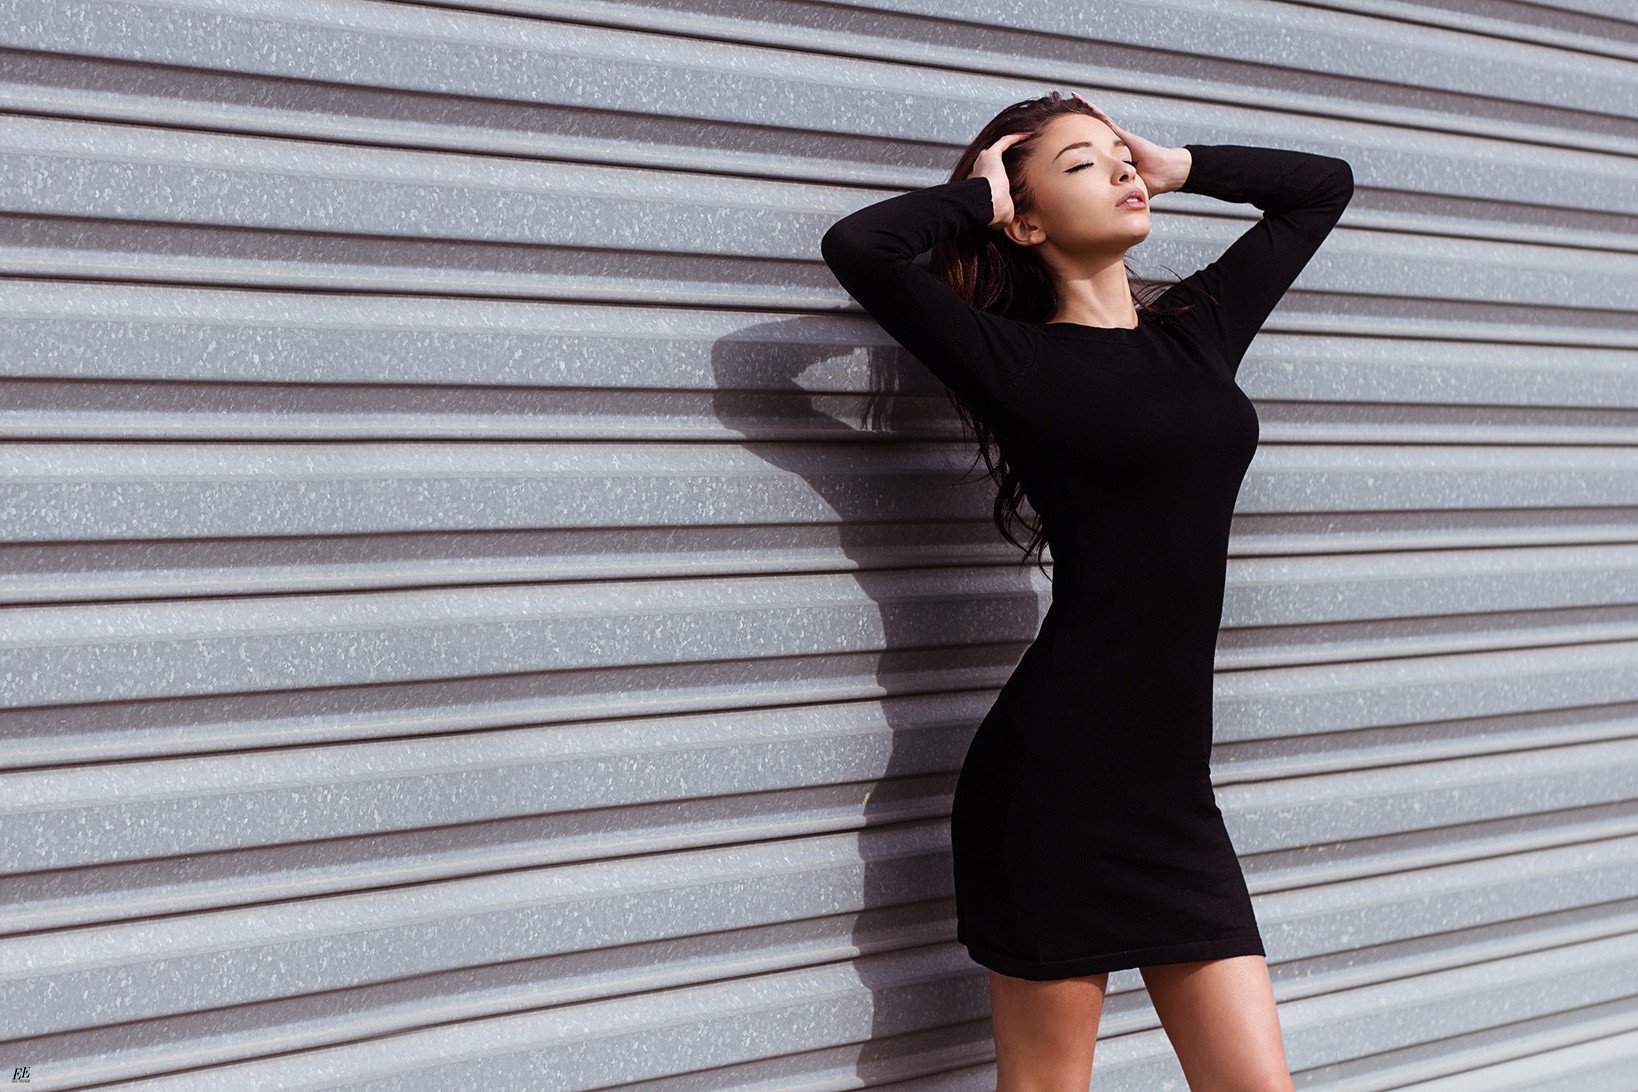 Eric Elger Women Model Brunette Long Hair Simple Background Dress Black Dress Closed Eyes Kenza Meli 1638x1092